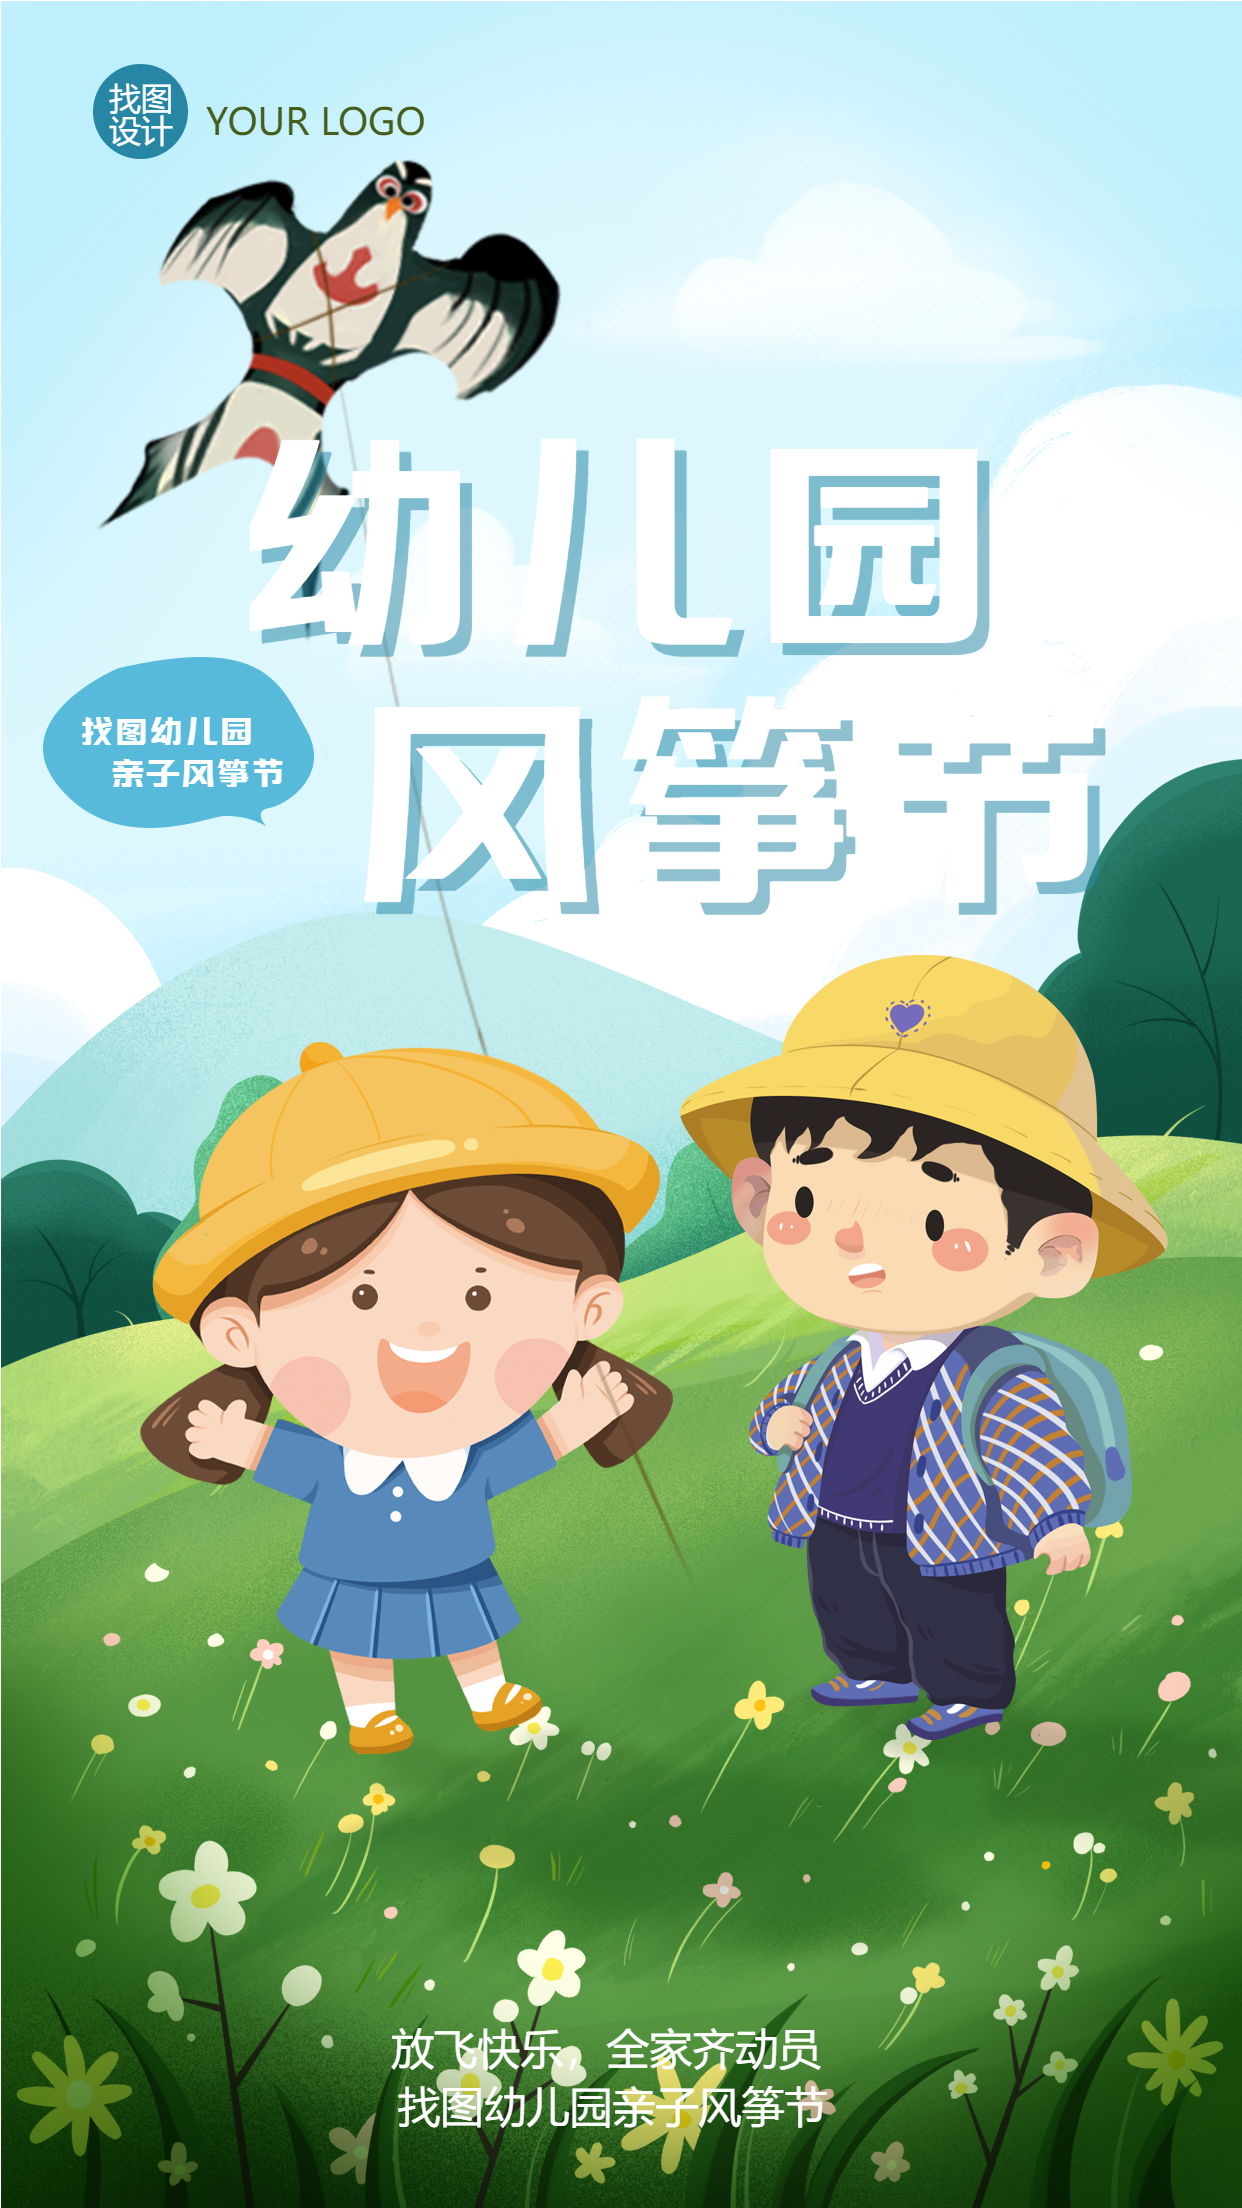 亲子游戏幼儿园风筝节放飞快乐手机海报